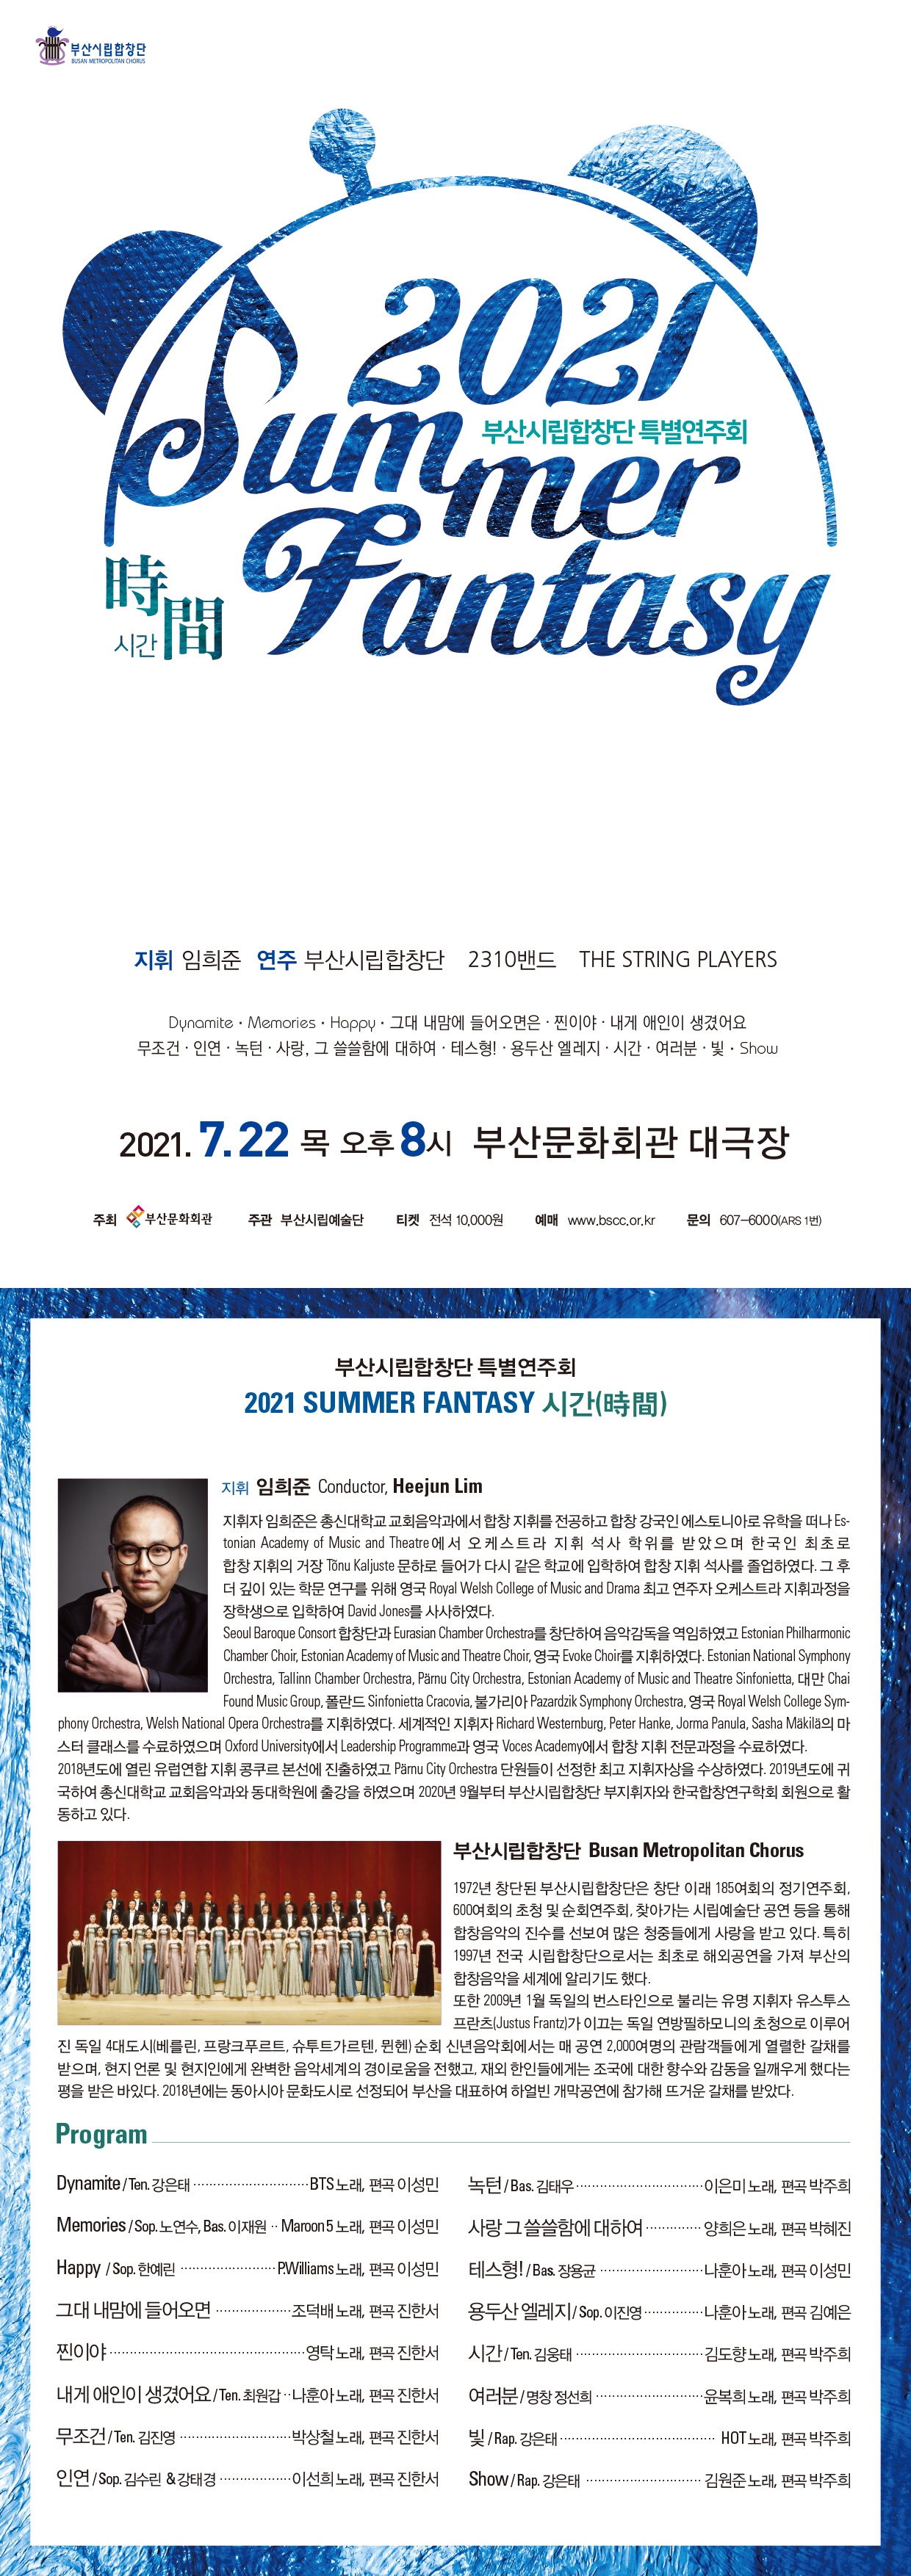 부산시립합창단 가요합창음악회 <2021 SUMMER FANTASY 시간(時間)>